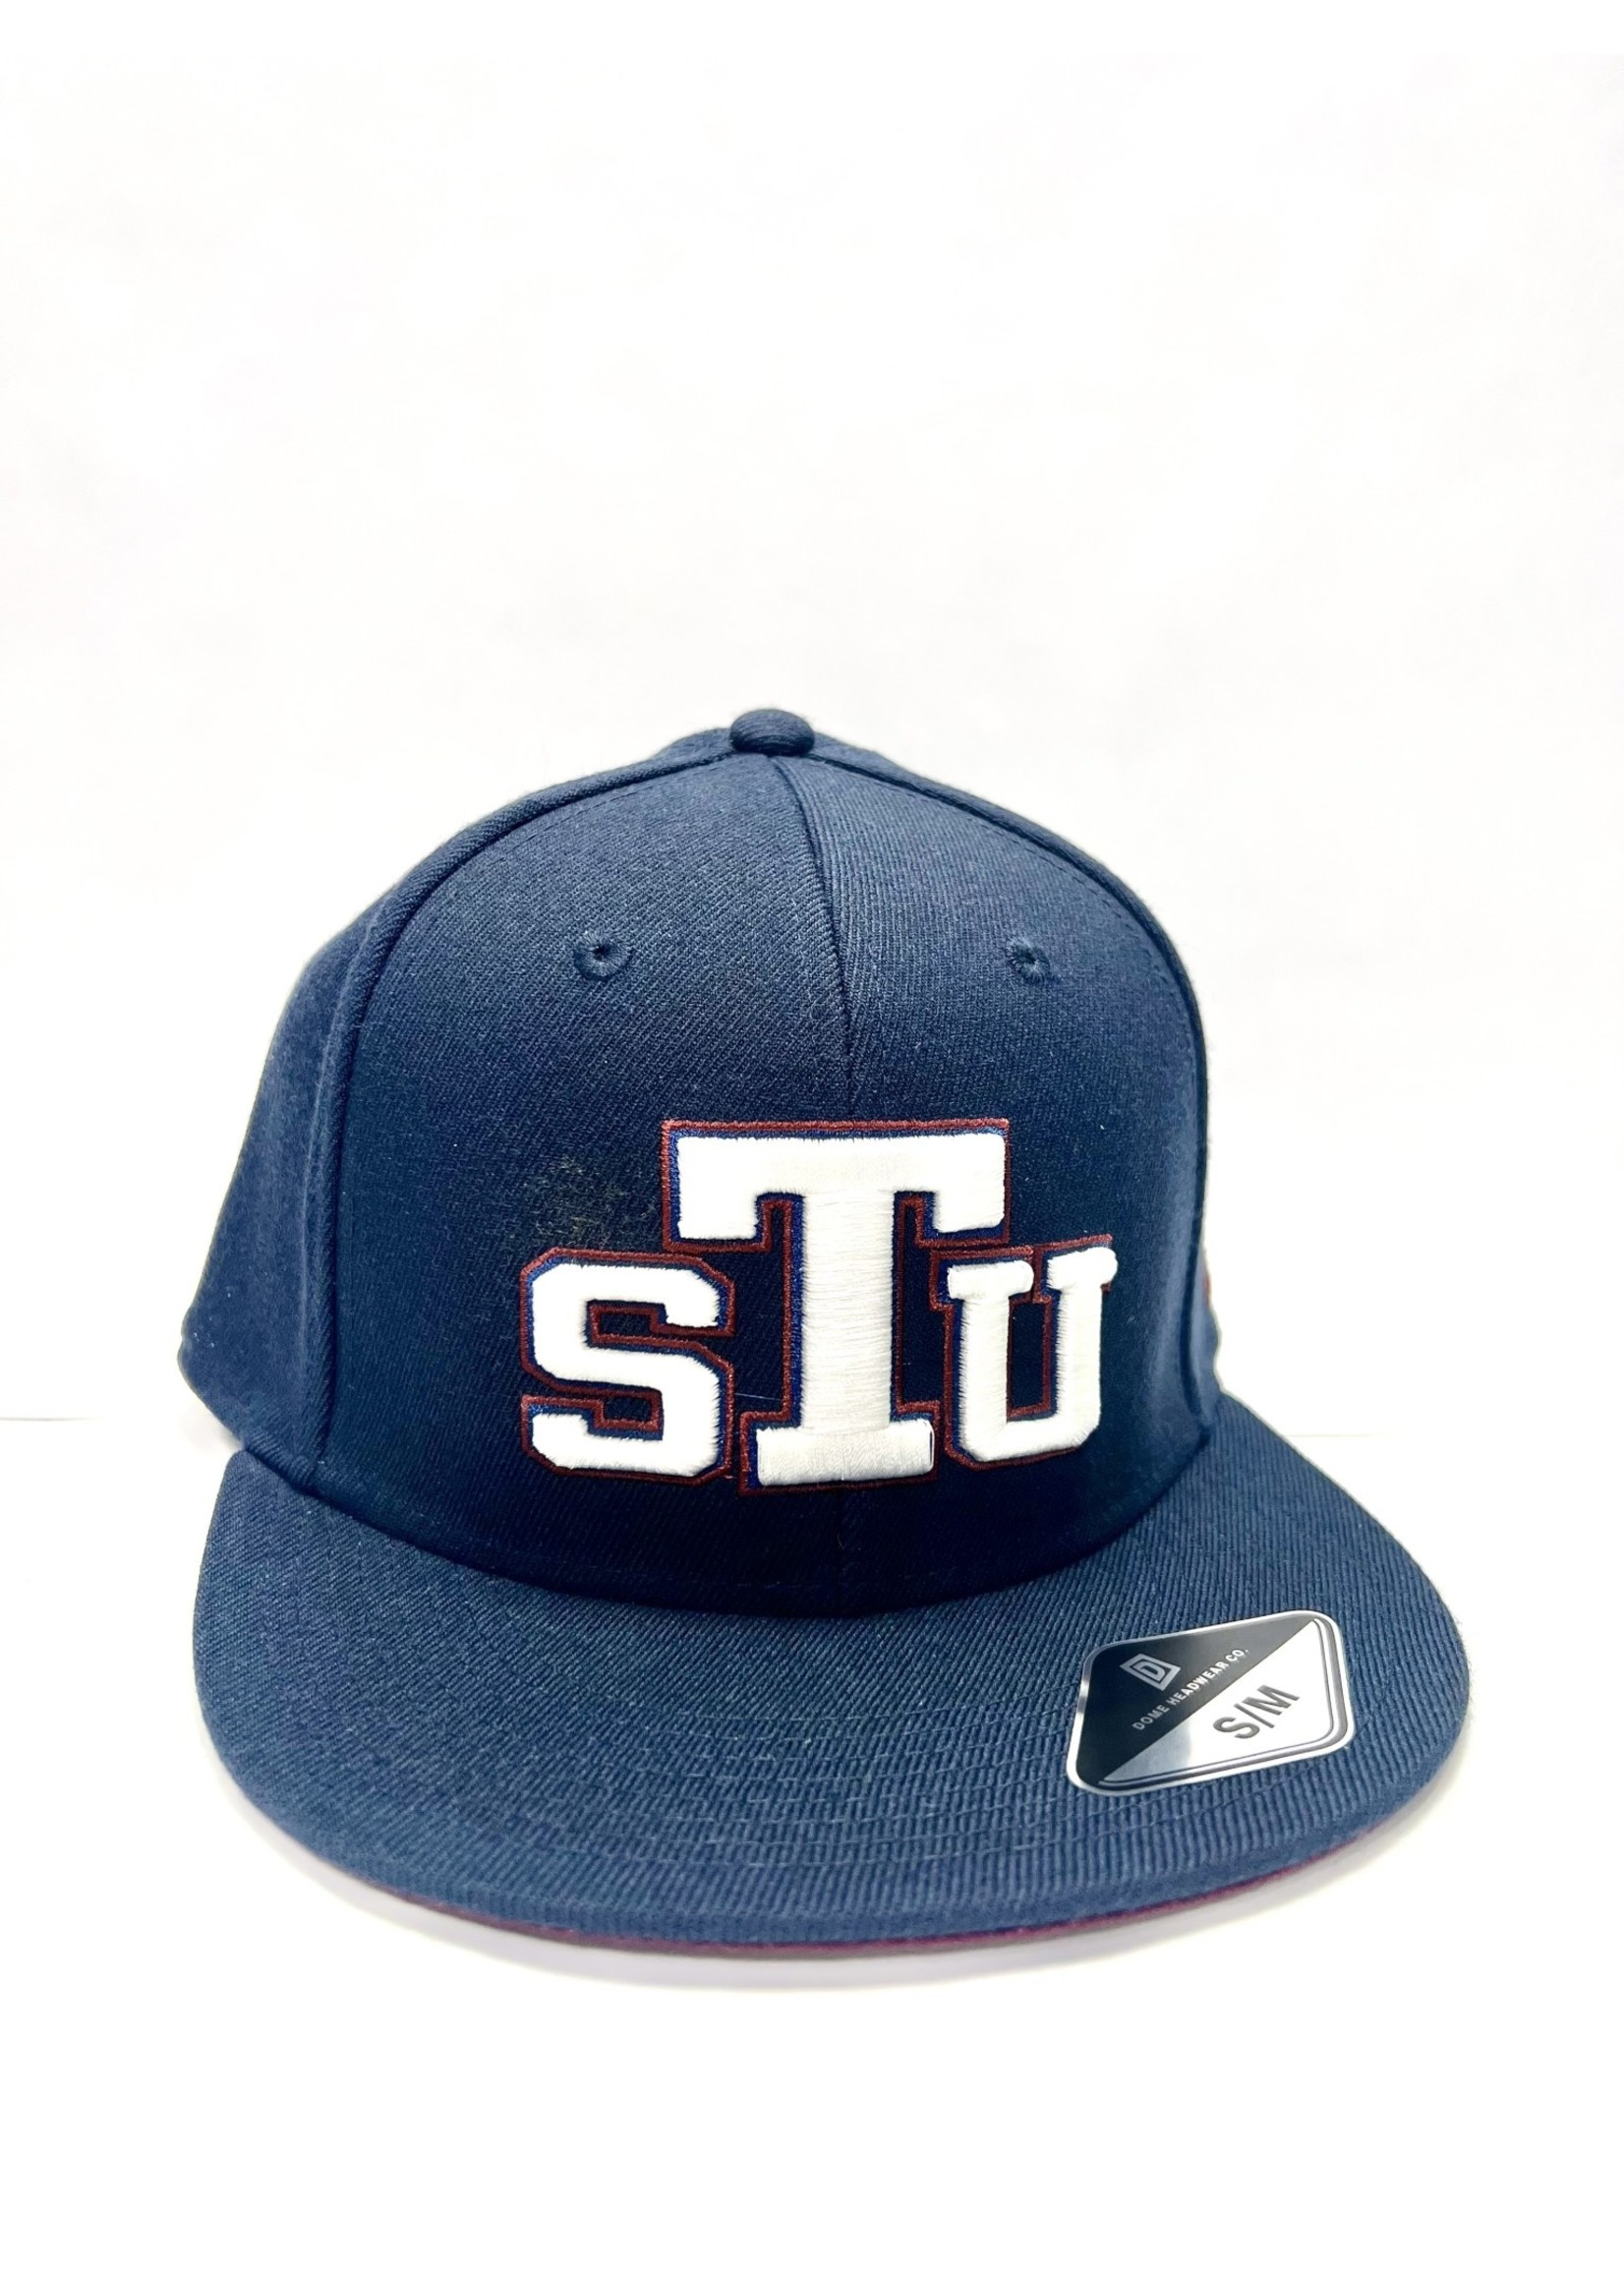 STU Official Baseball Cap